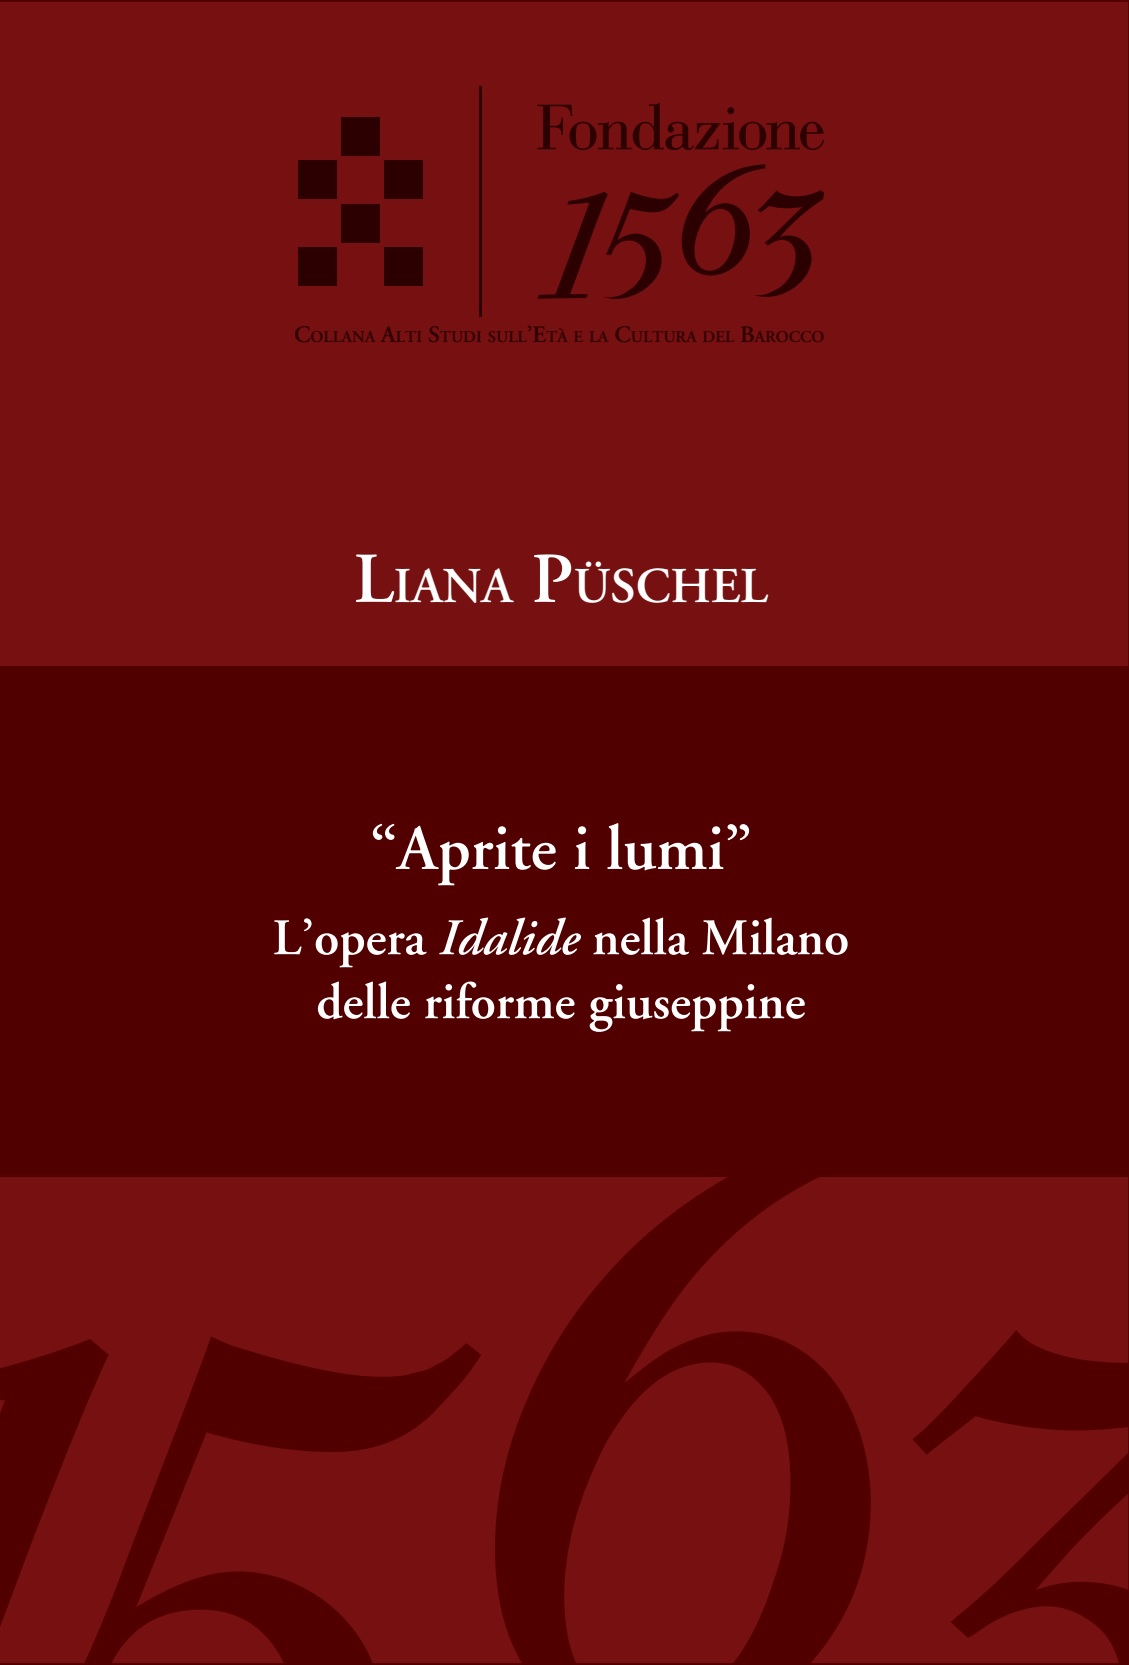 Liana Püschel, "Aprite i lumi". L’opera Idalide nella Milano delle riforme giuseppine, ASECB, Fondazione 1563, 2023